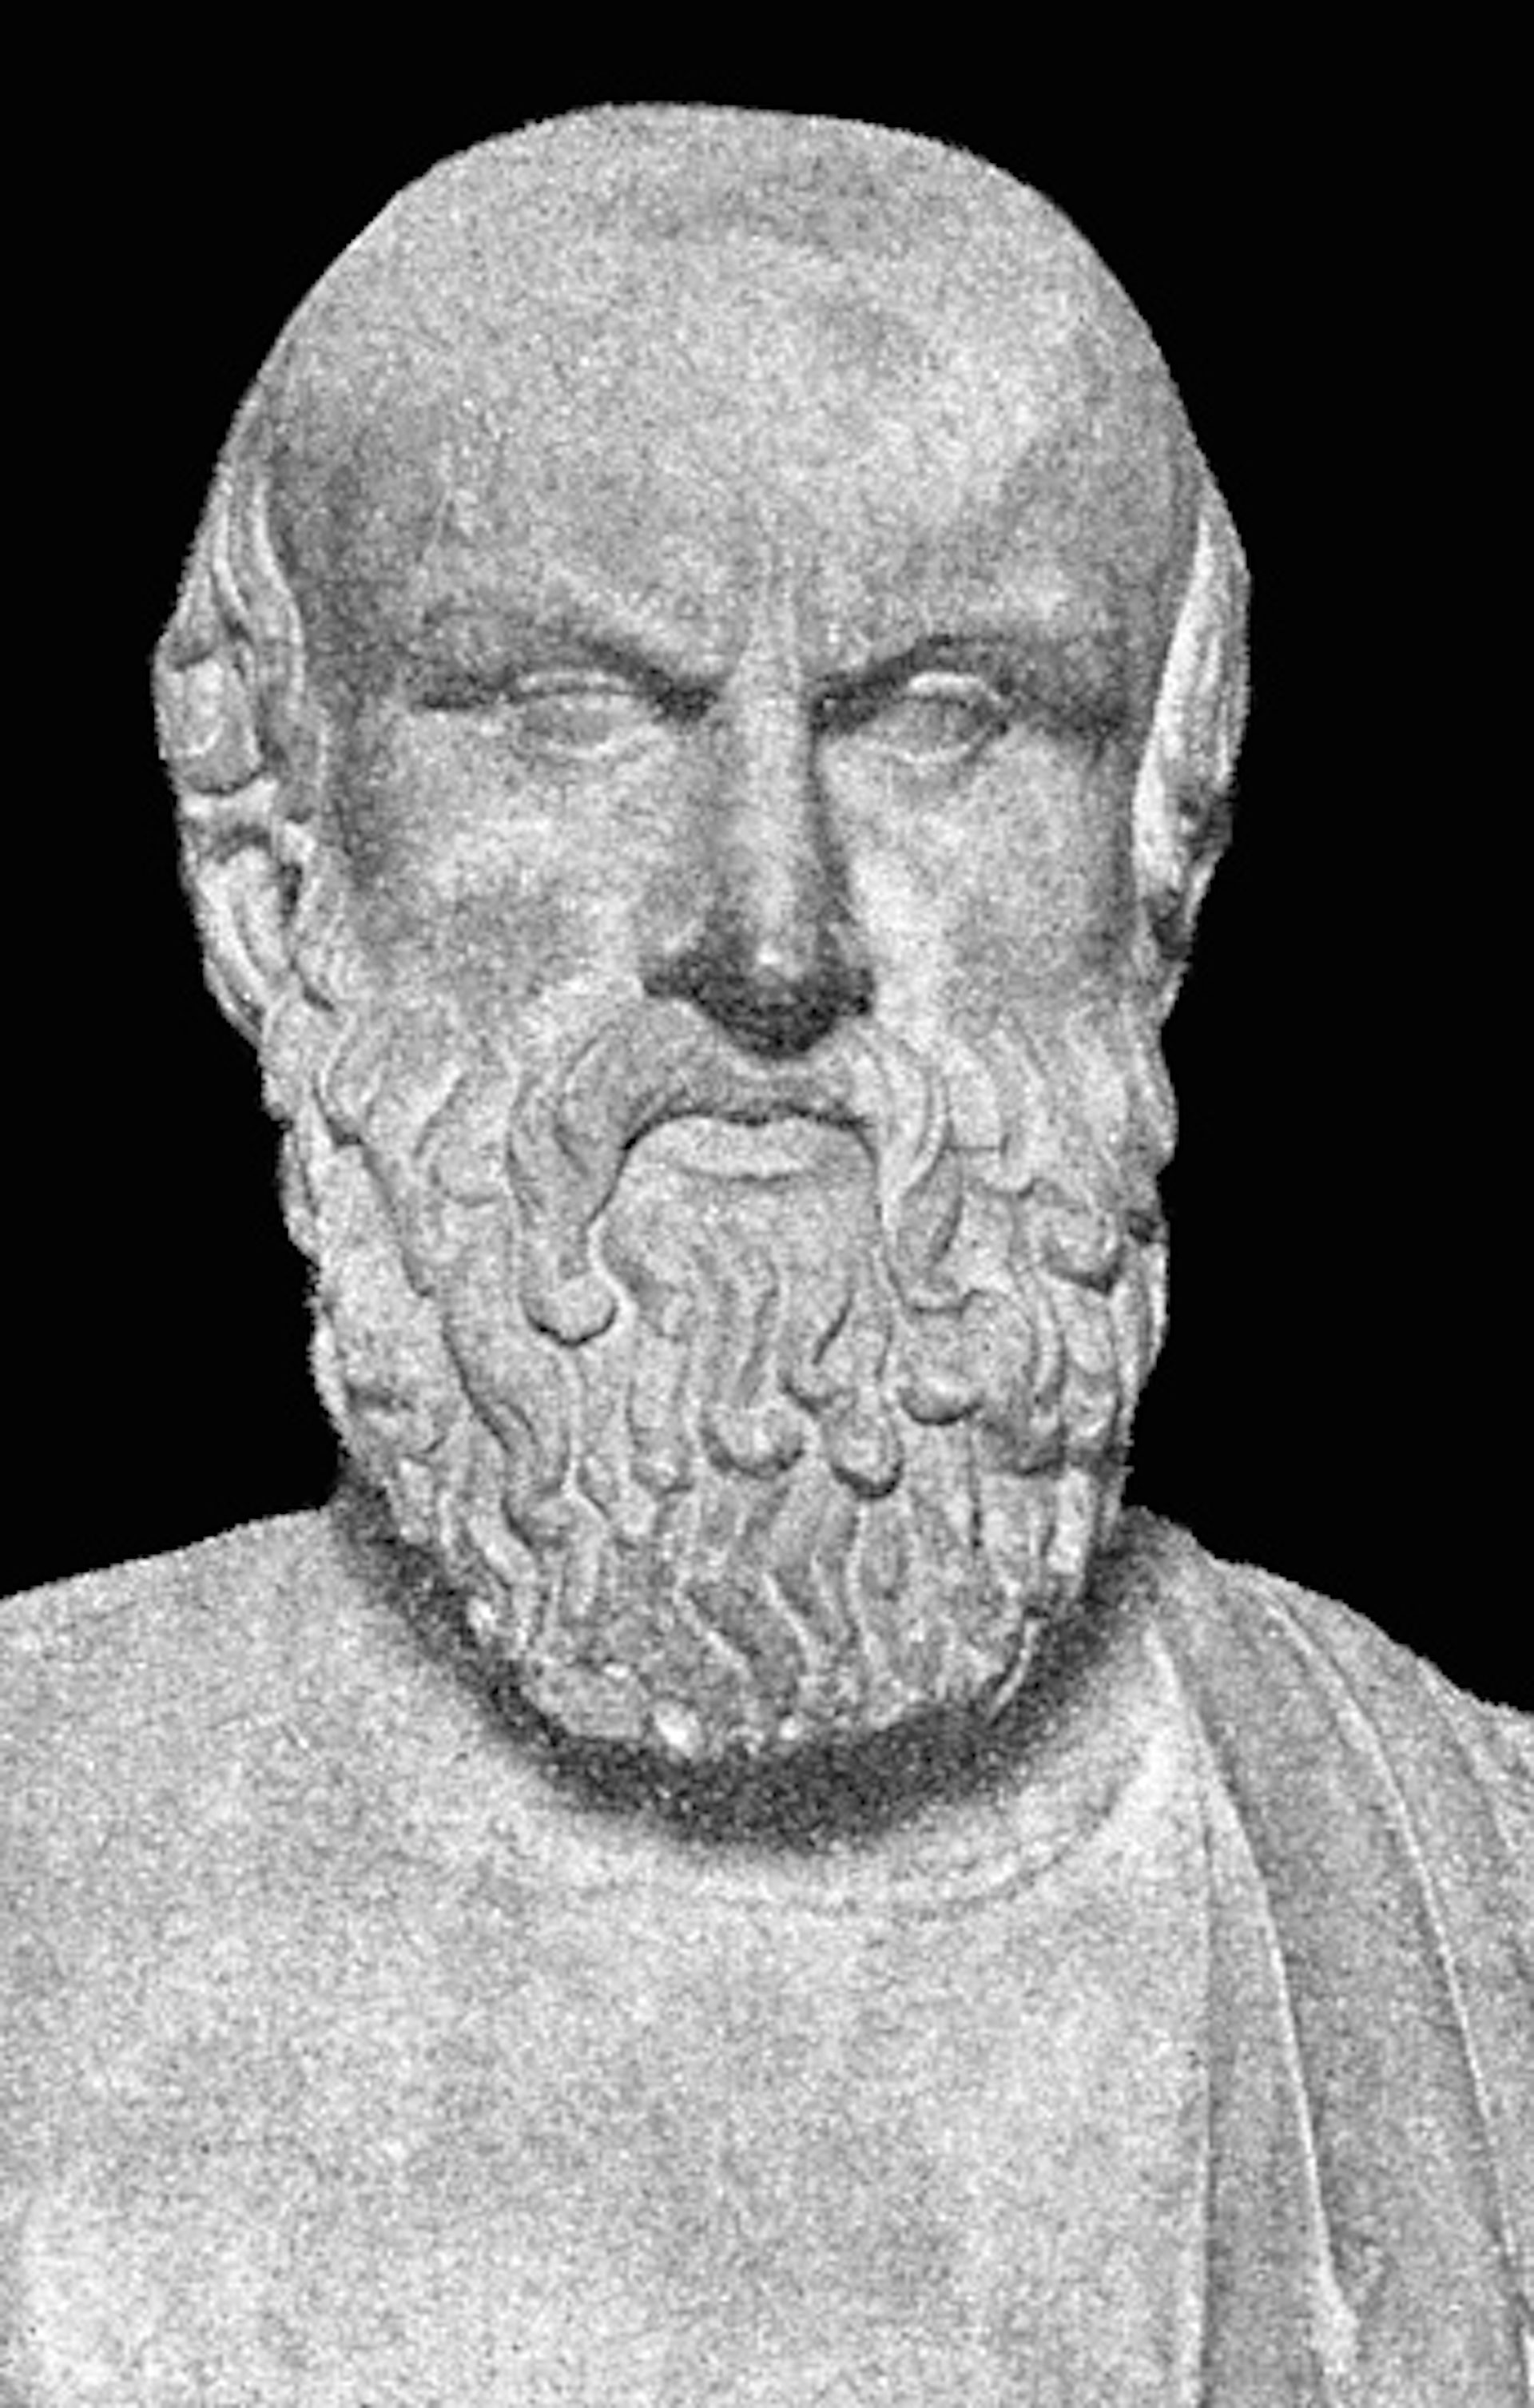 Bust of Aeschylus